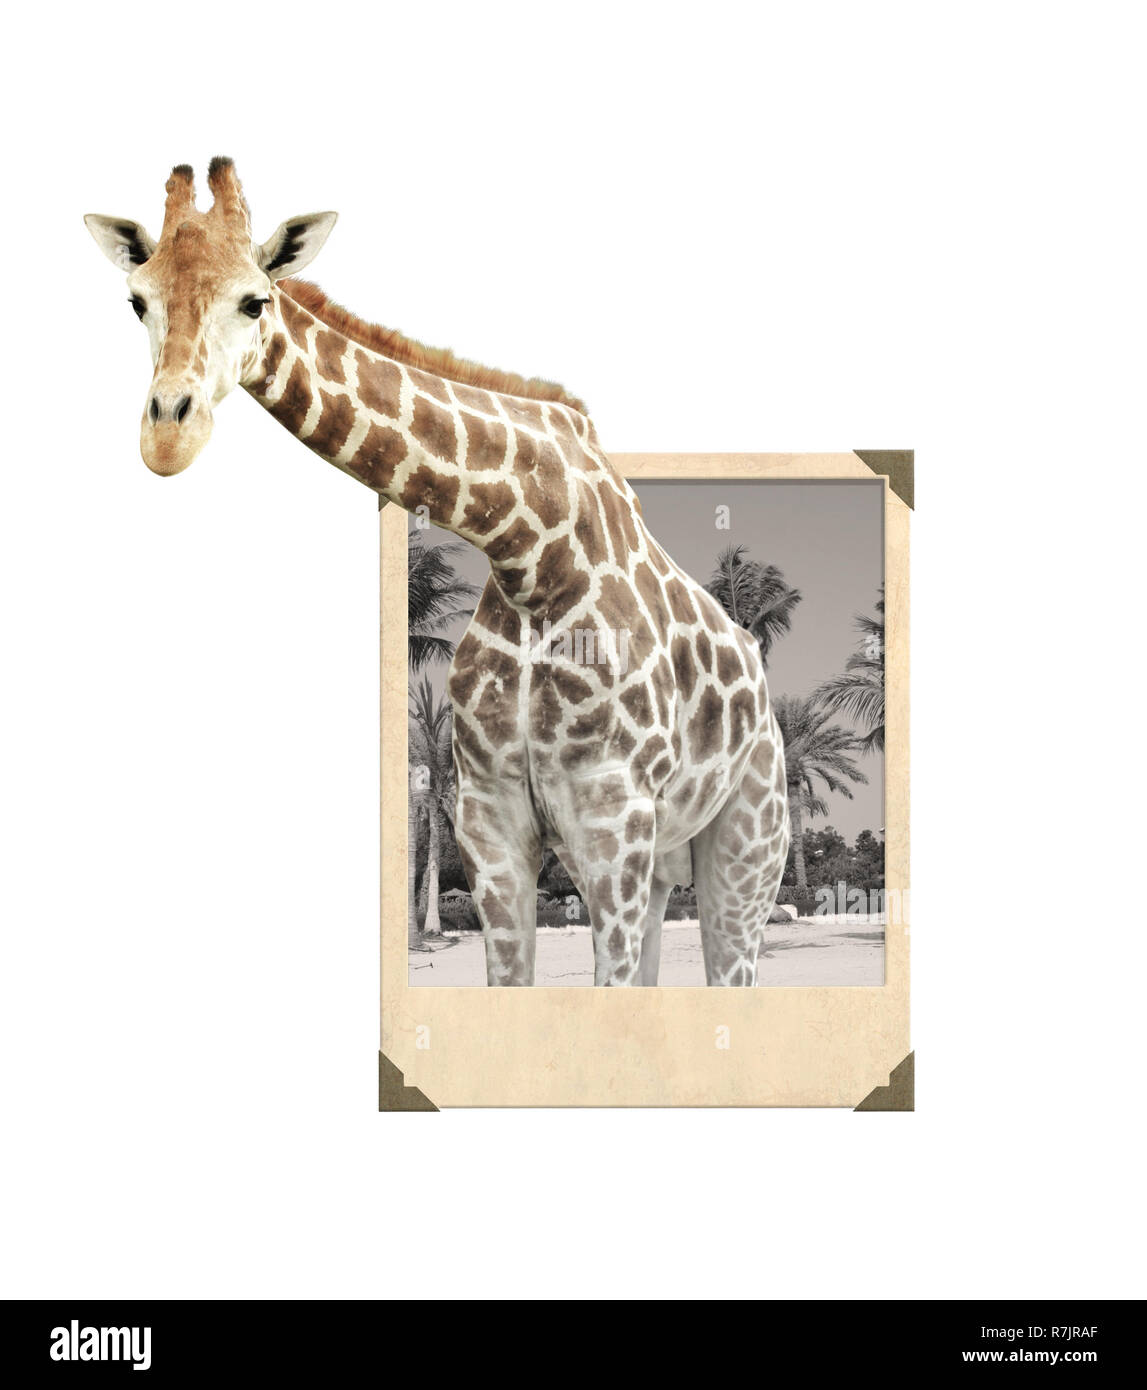 Girafe vintage photo frame avec effet 3D. Isolé sur fond blanc Banque D'Images